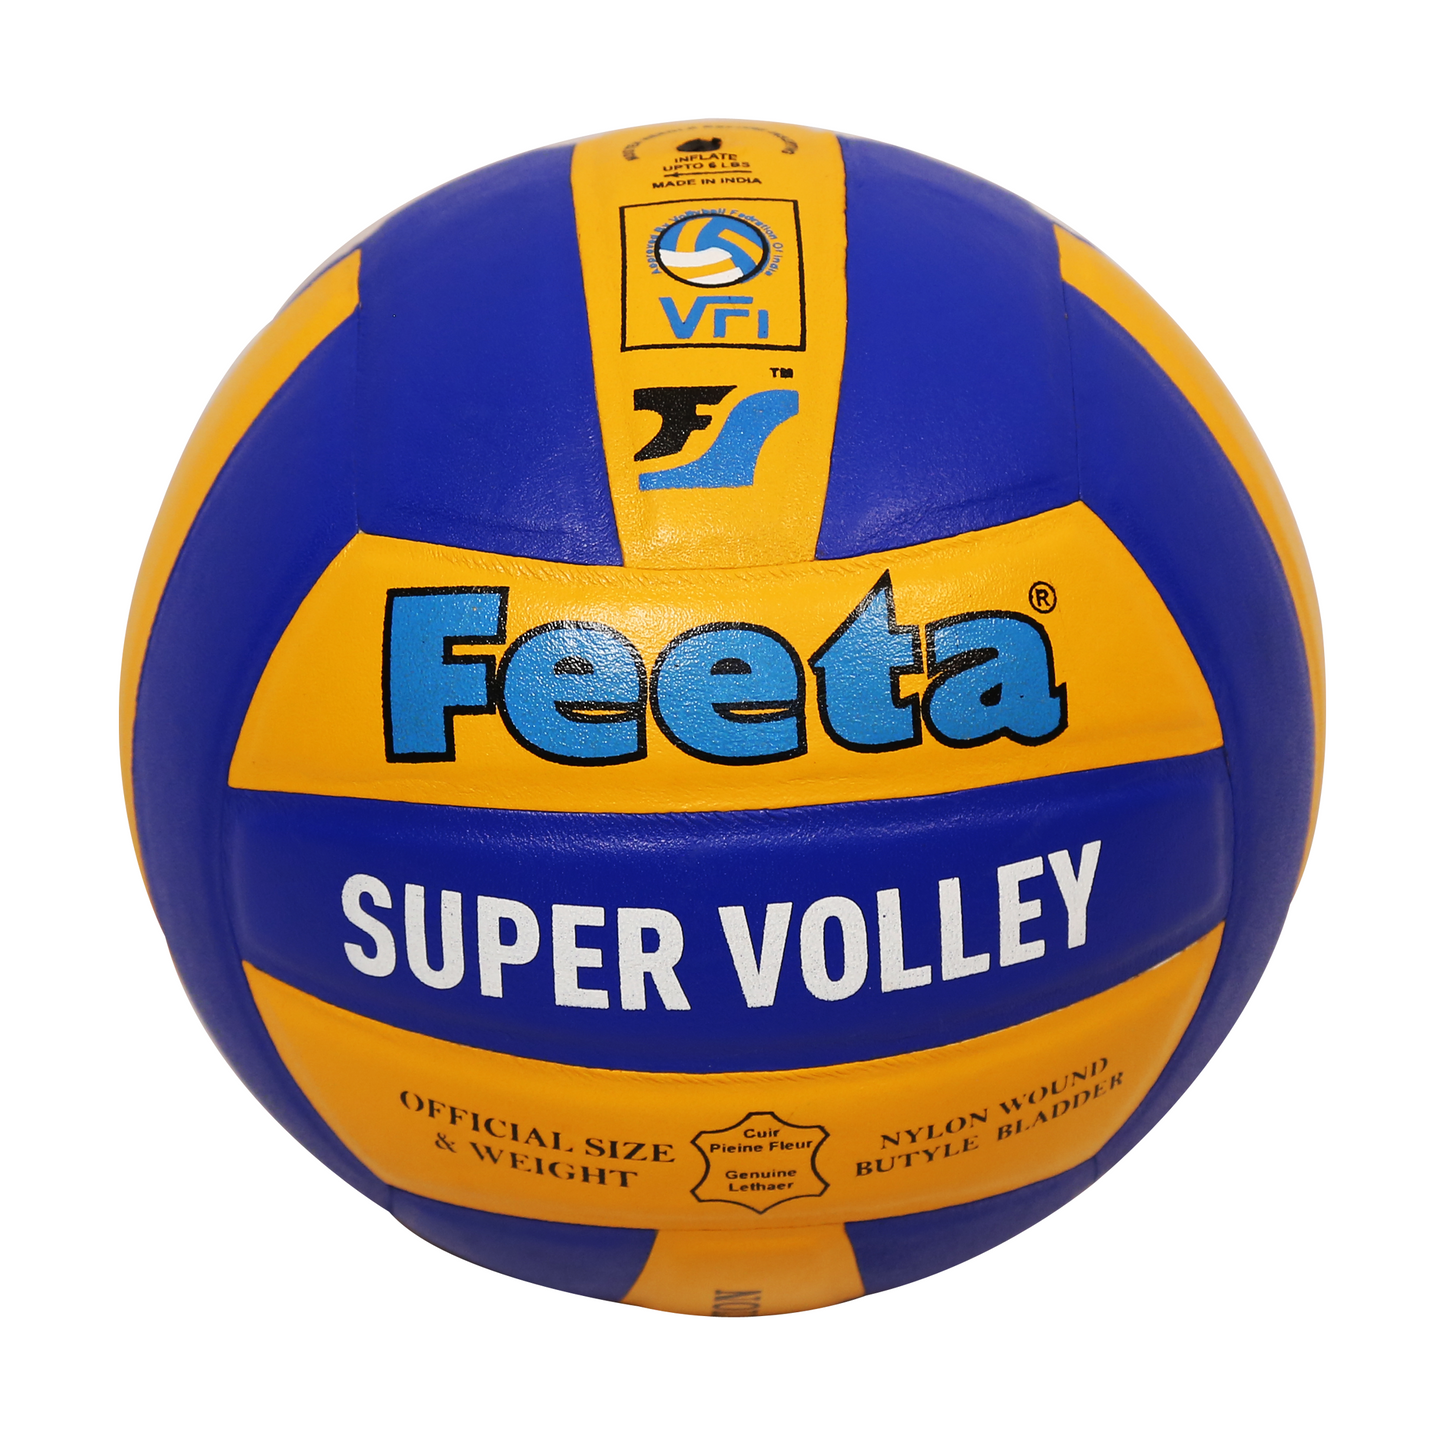 Fenta Super Volleyball